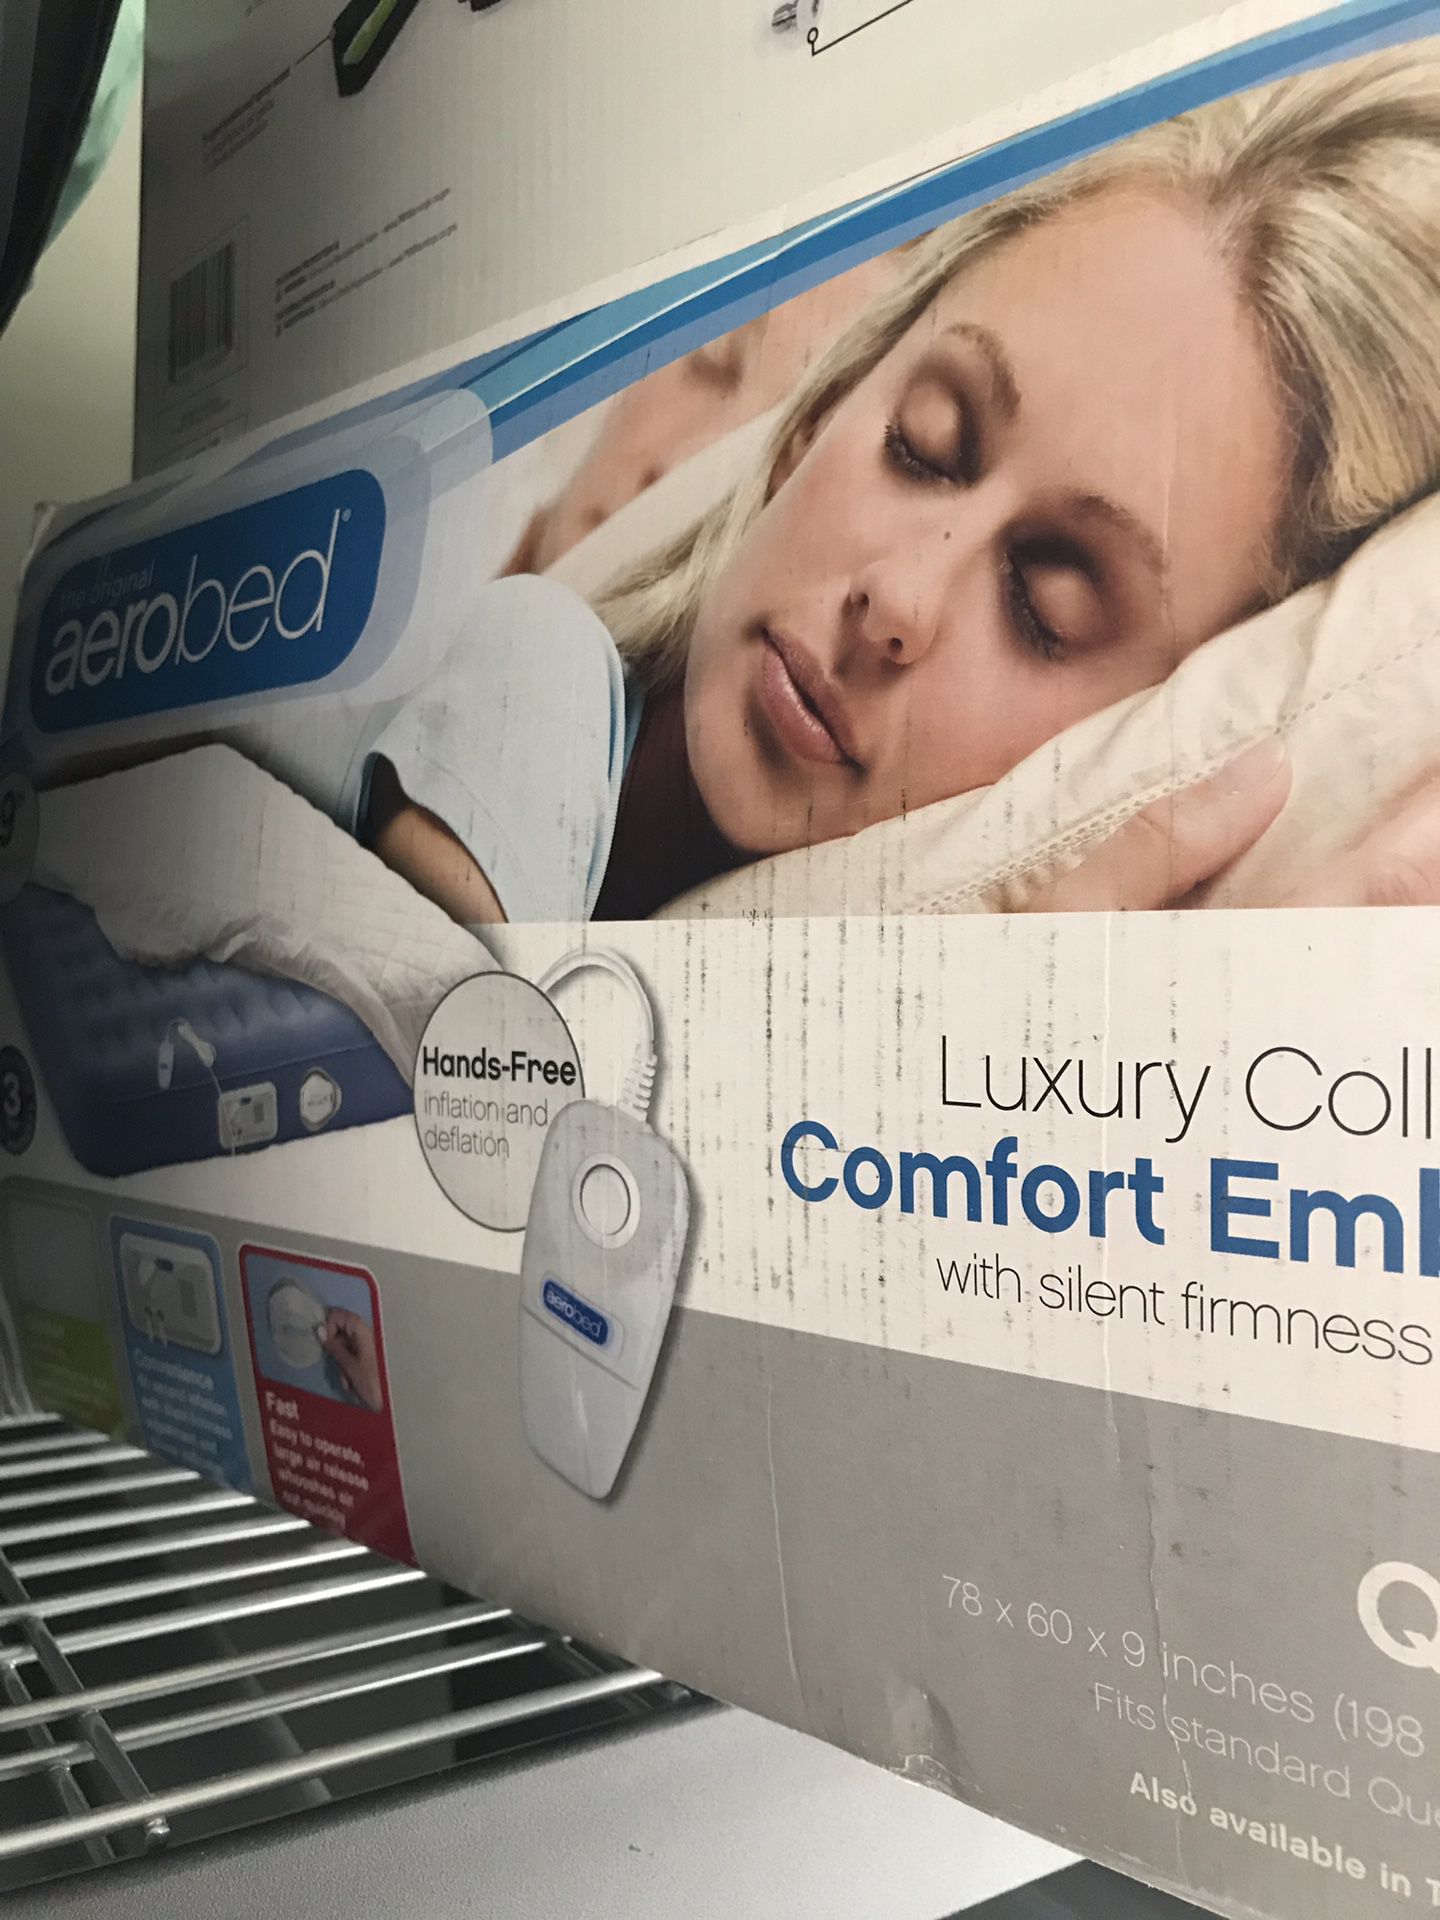 Aero bed - air mattress queen